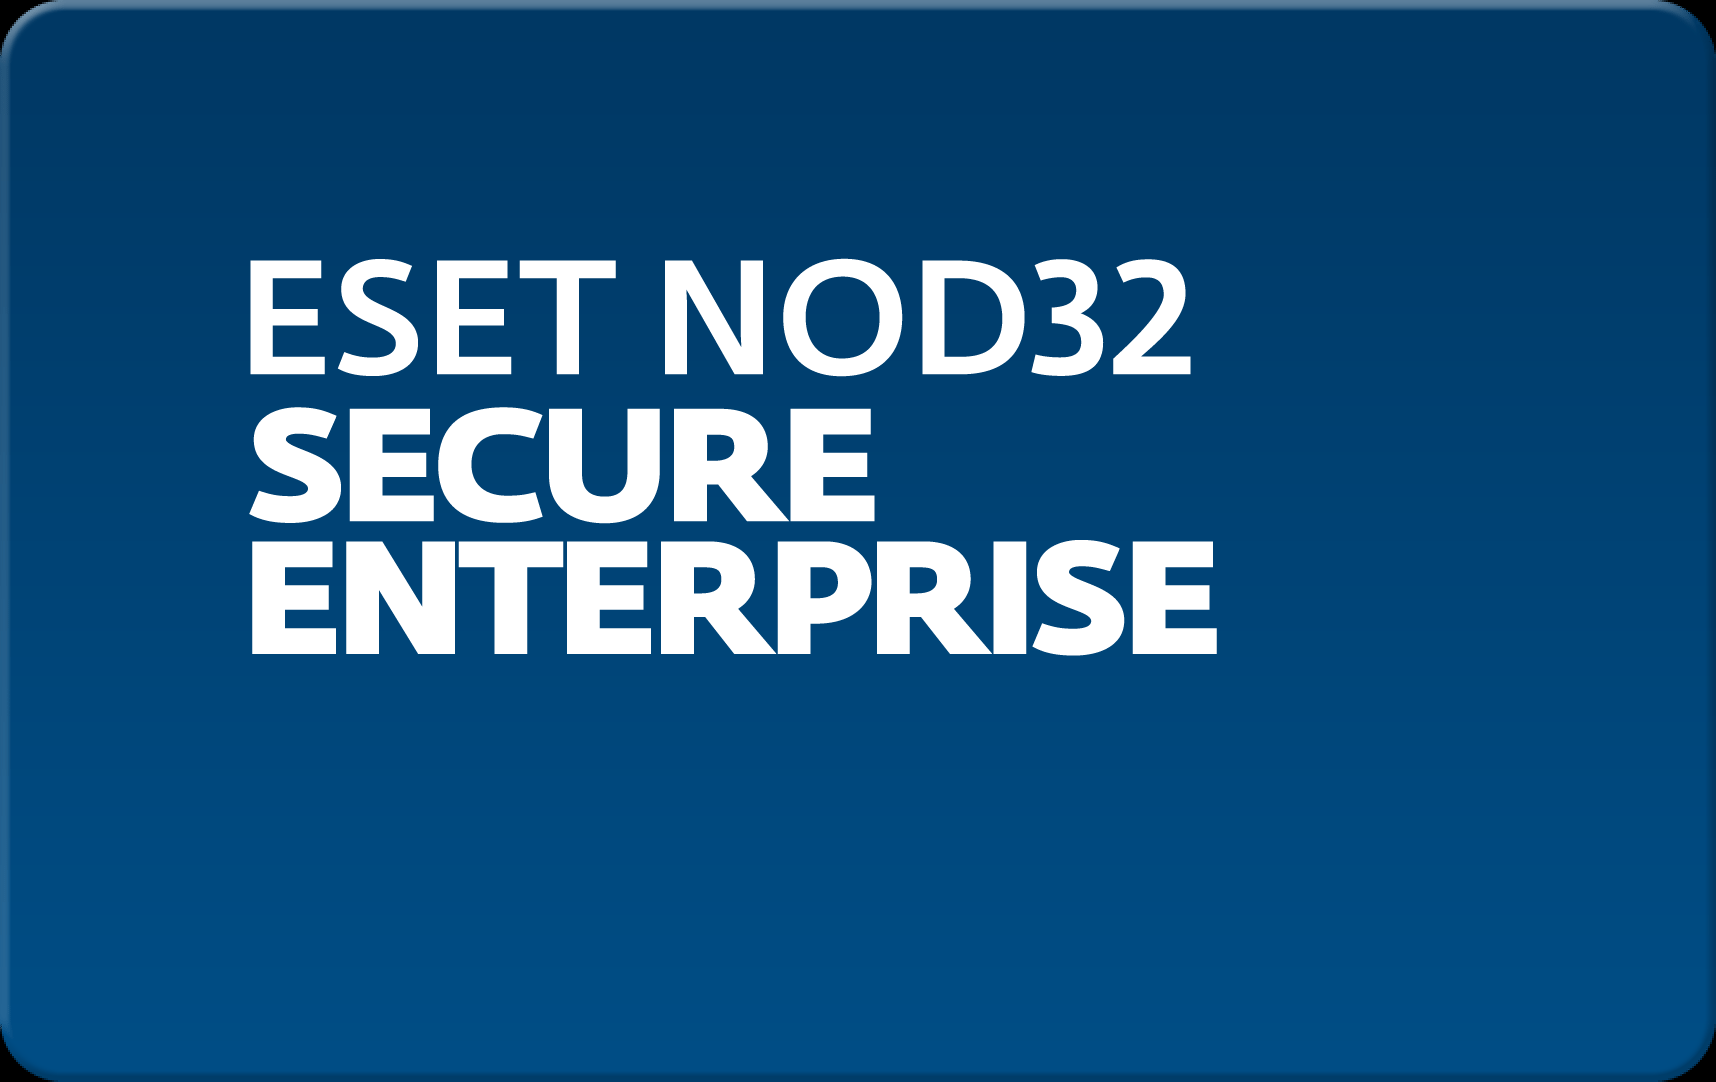        Eset NOD32 Secure Enterprise  143 